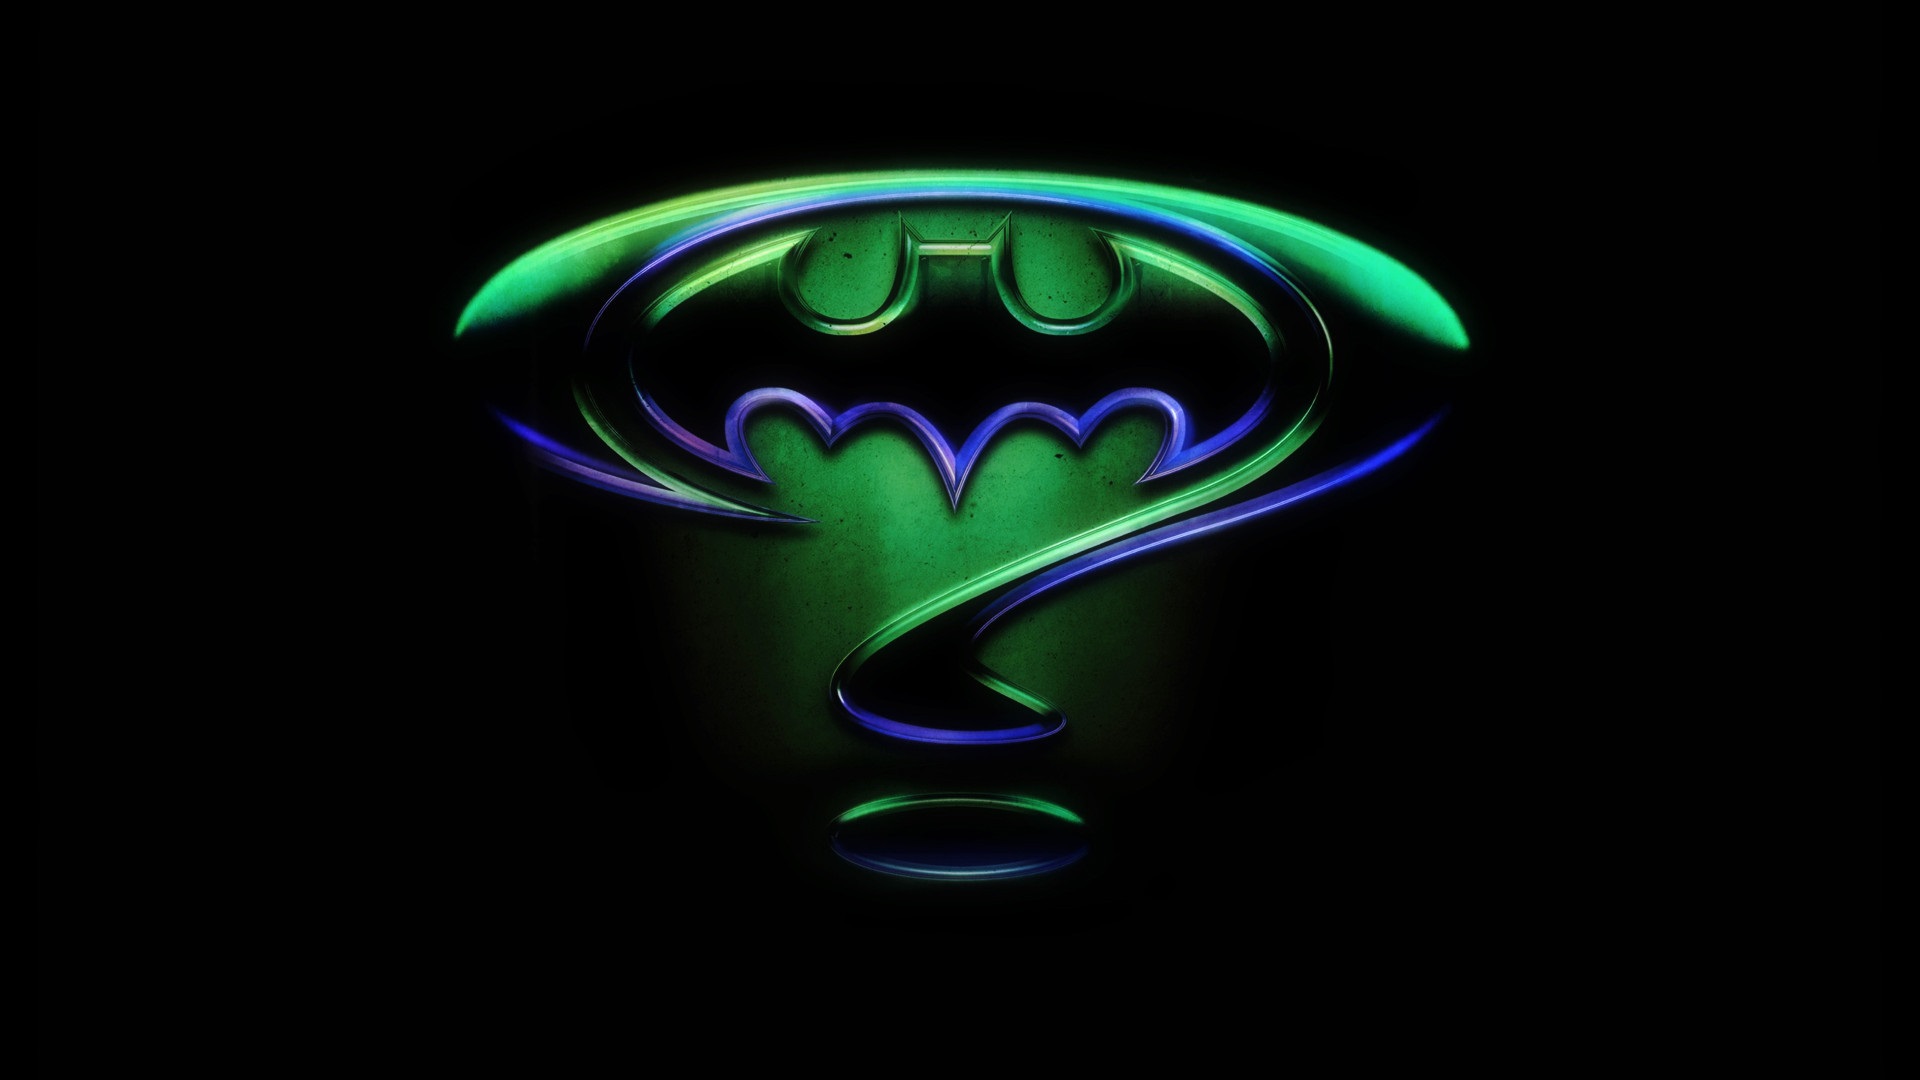 Classic Batman Logo Wallpaper